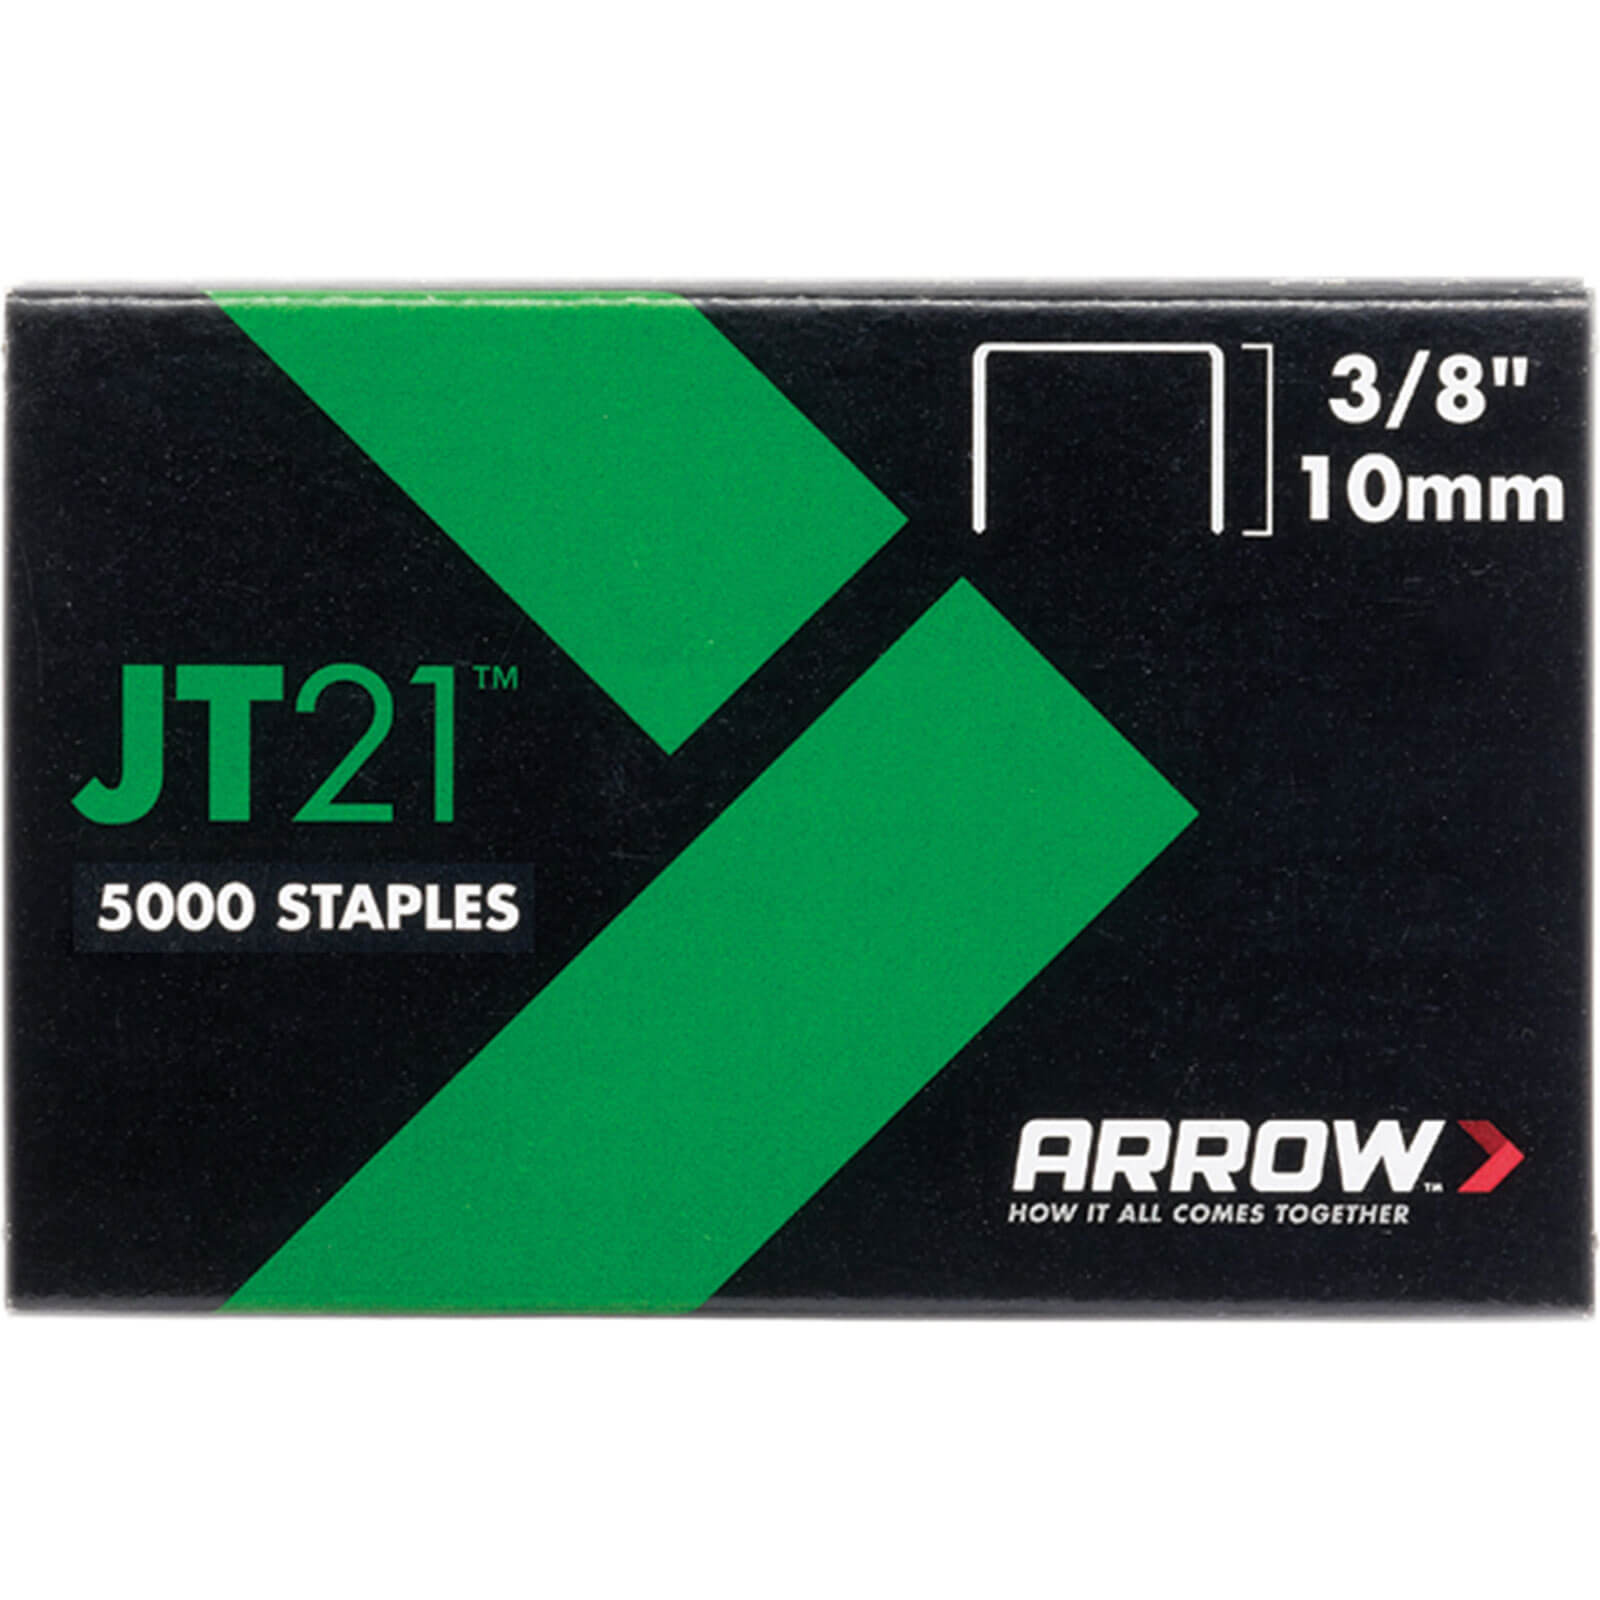 Image of Arrow Staples for JT21 / T27 Staple Guns 10mm Pack of 5000